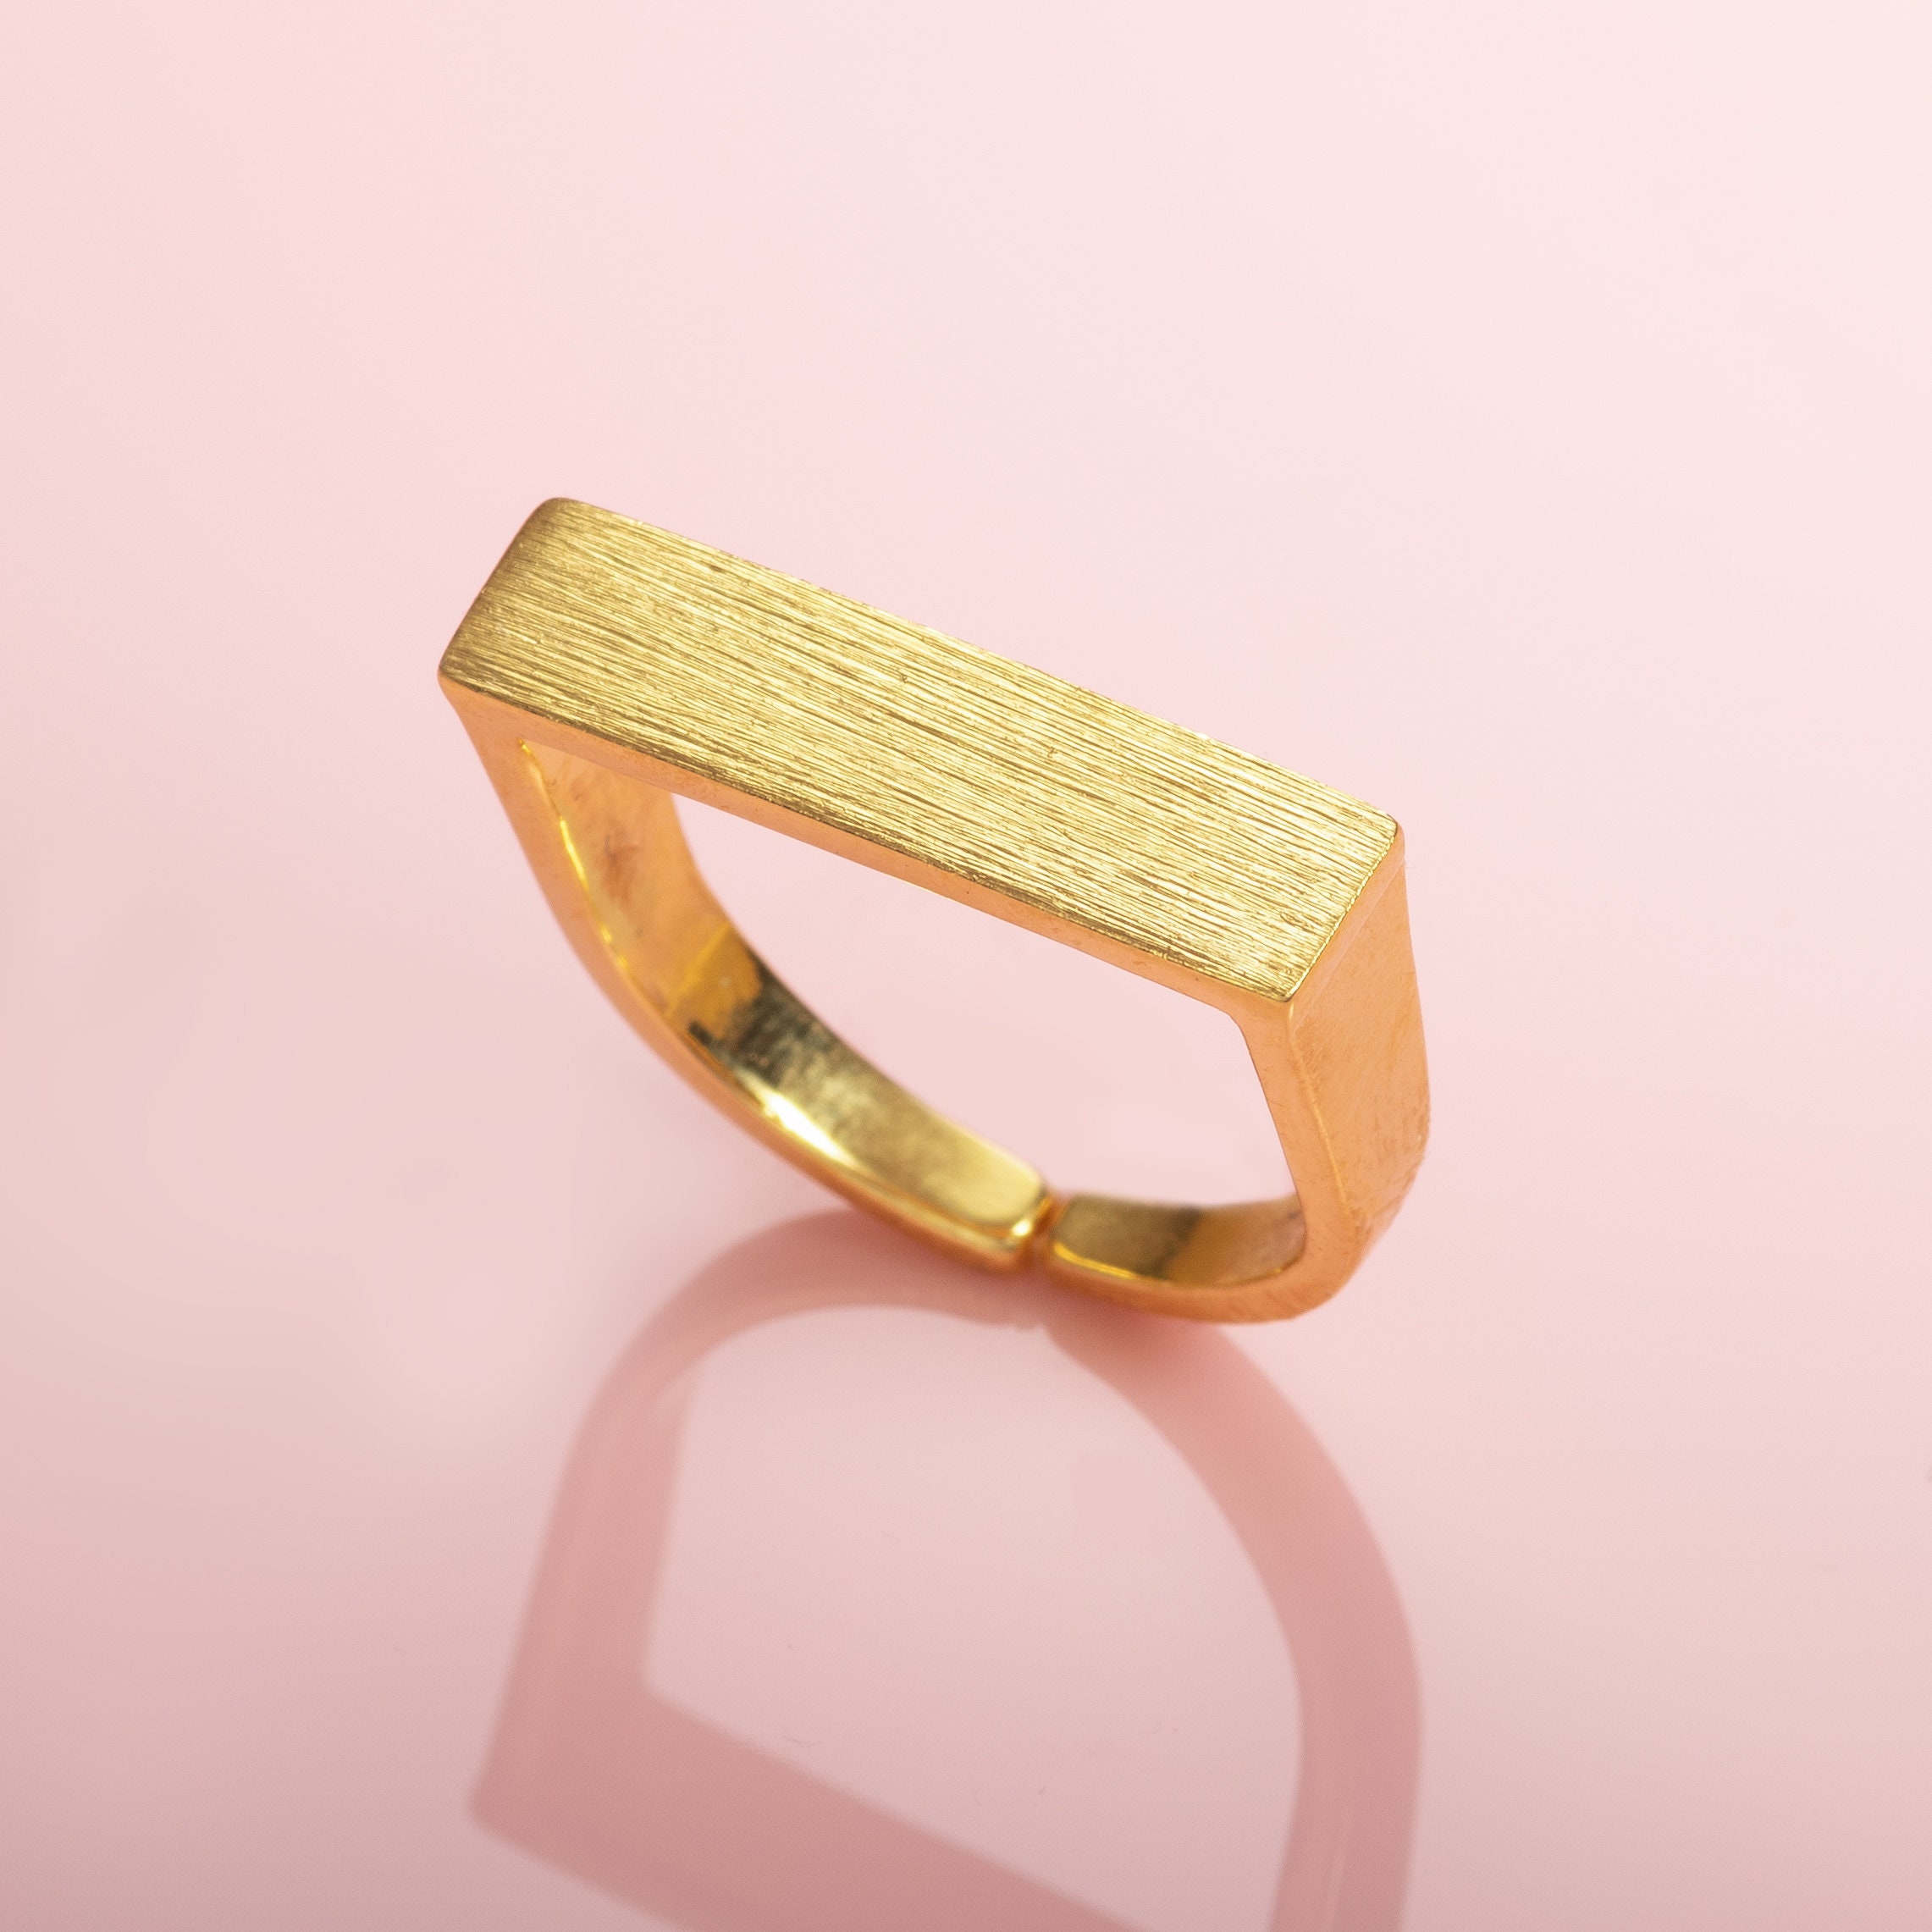 Adjustable Rose Gold Bracelet for Women and Teenage Girls, Rose